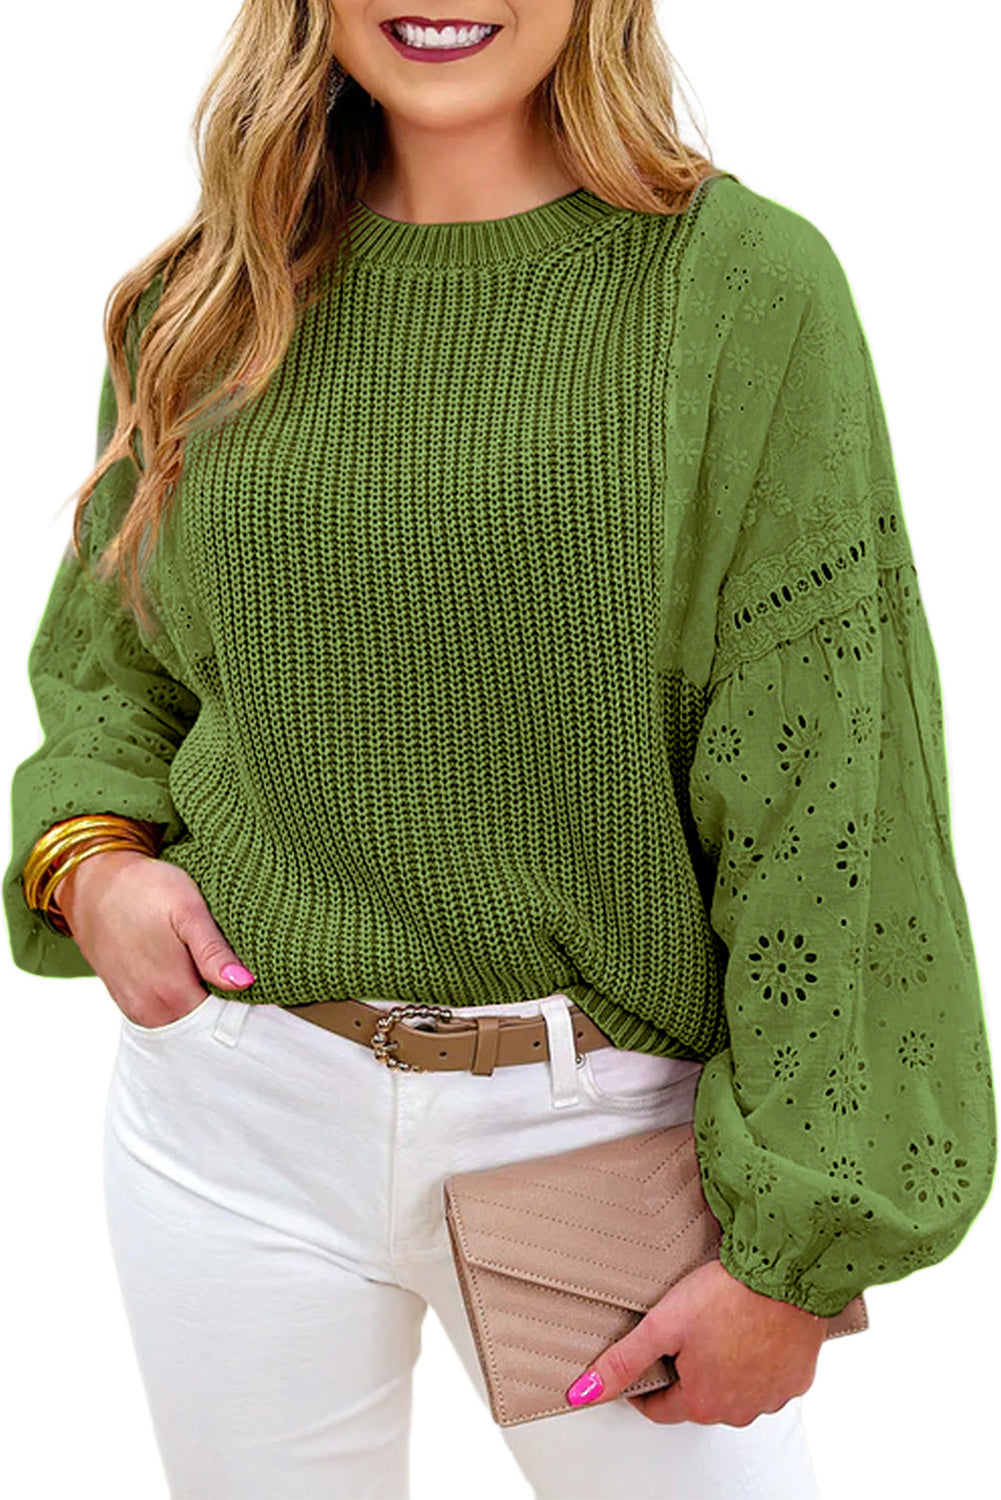 Zelen pulover pulover s spuščenimi rameni z očesci